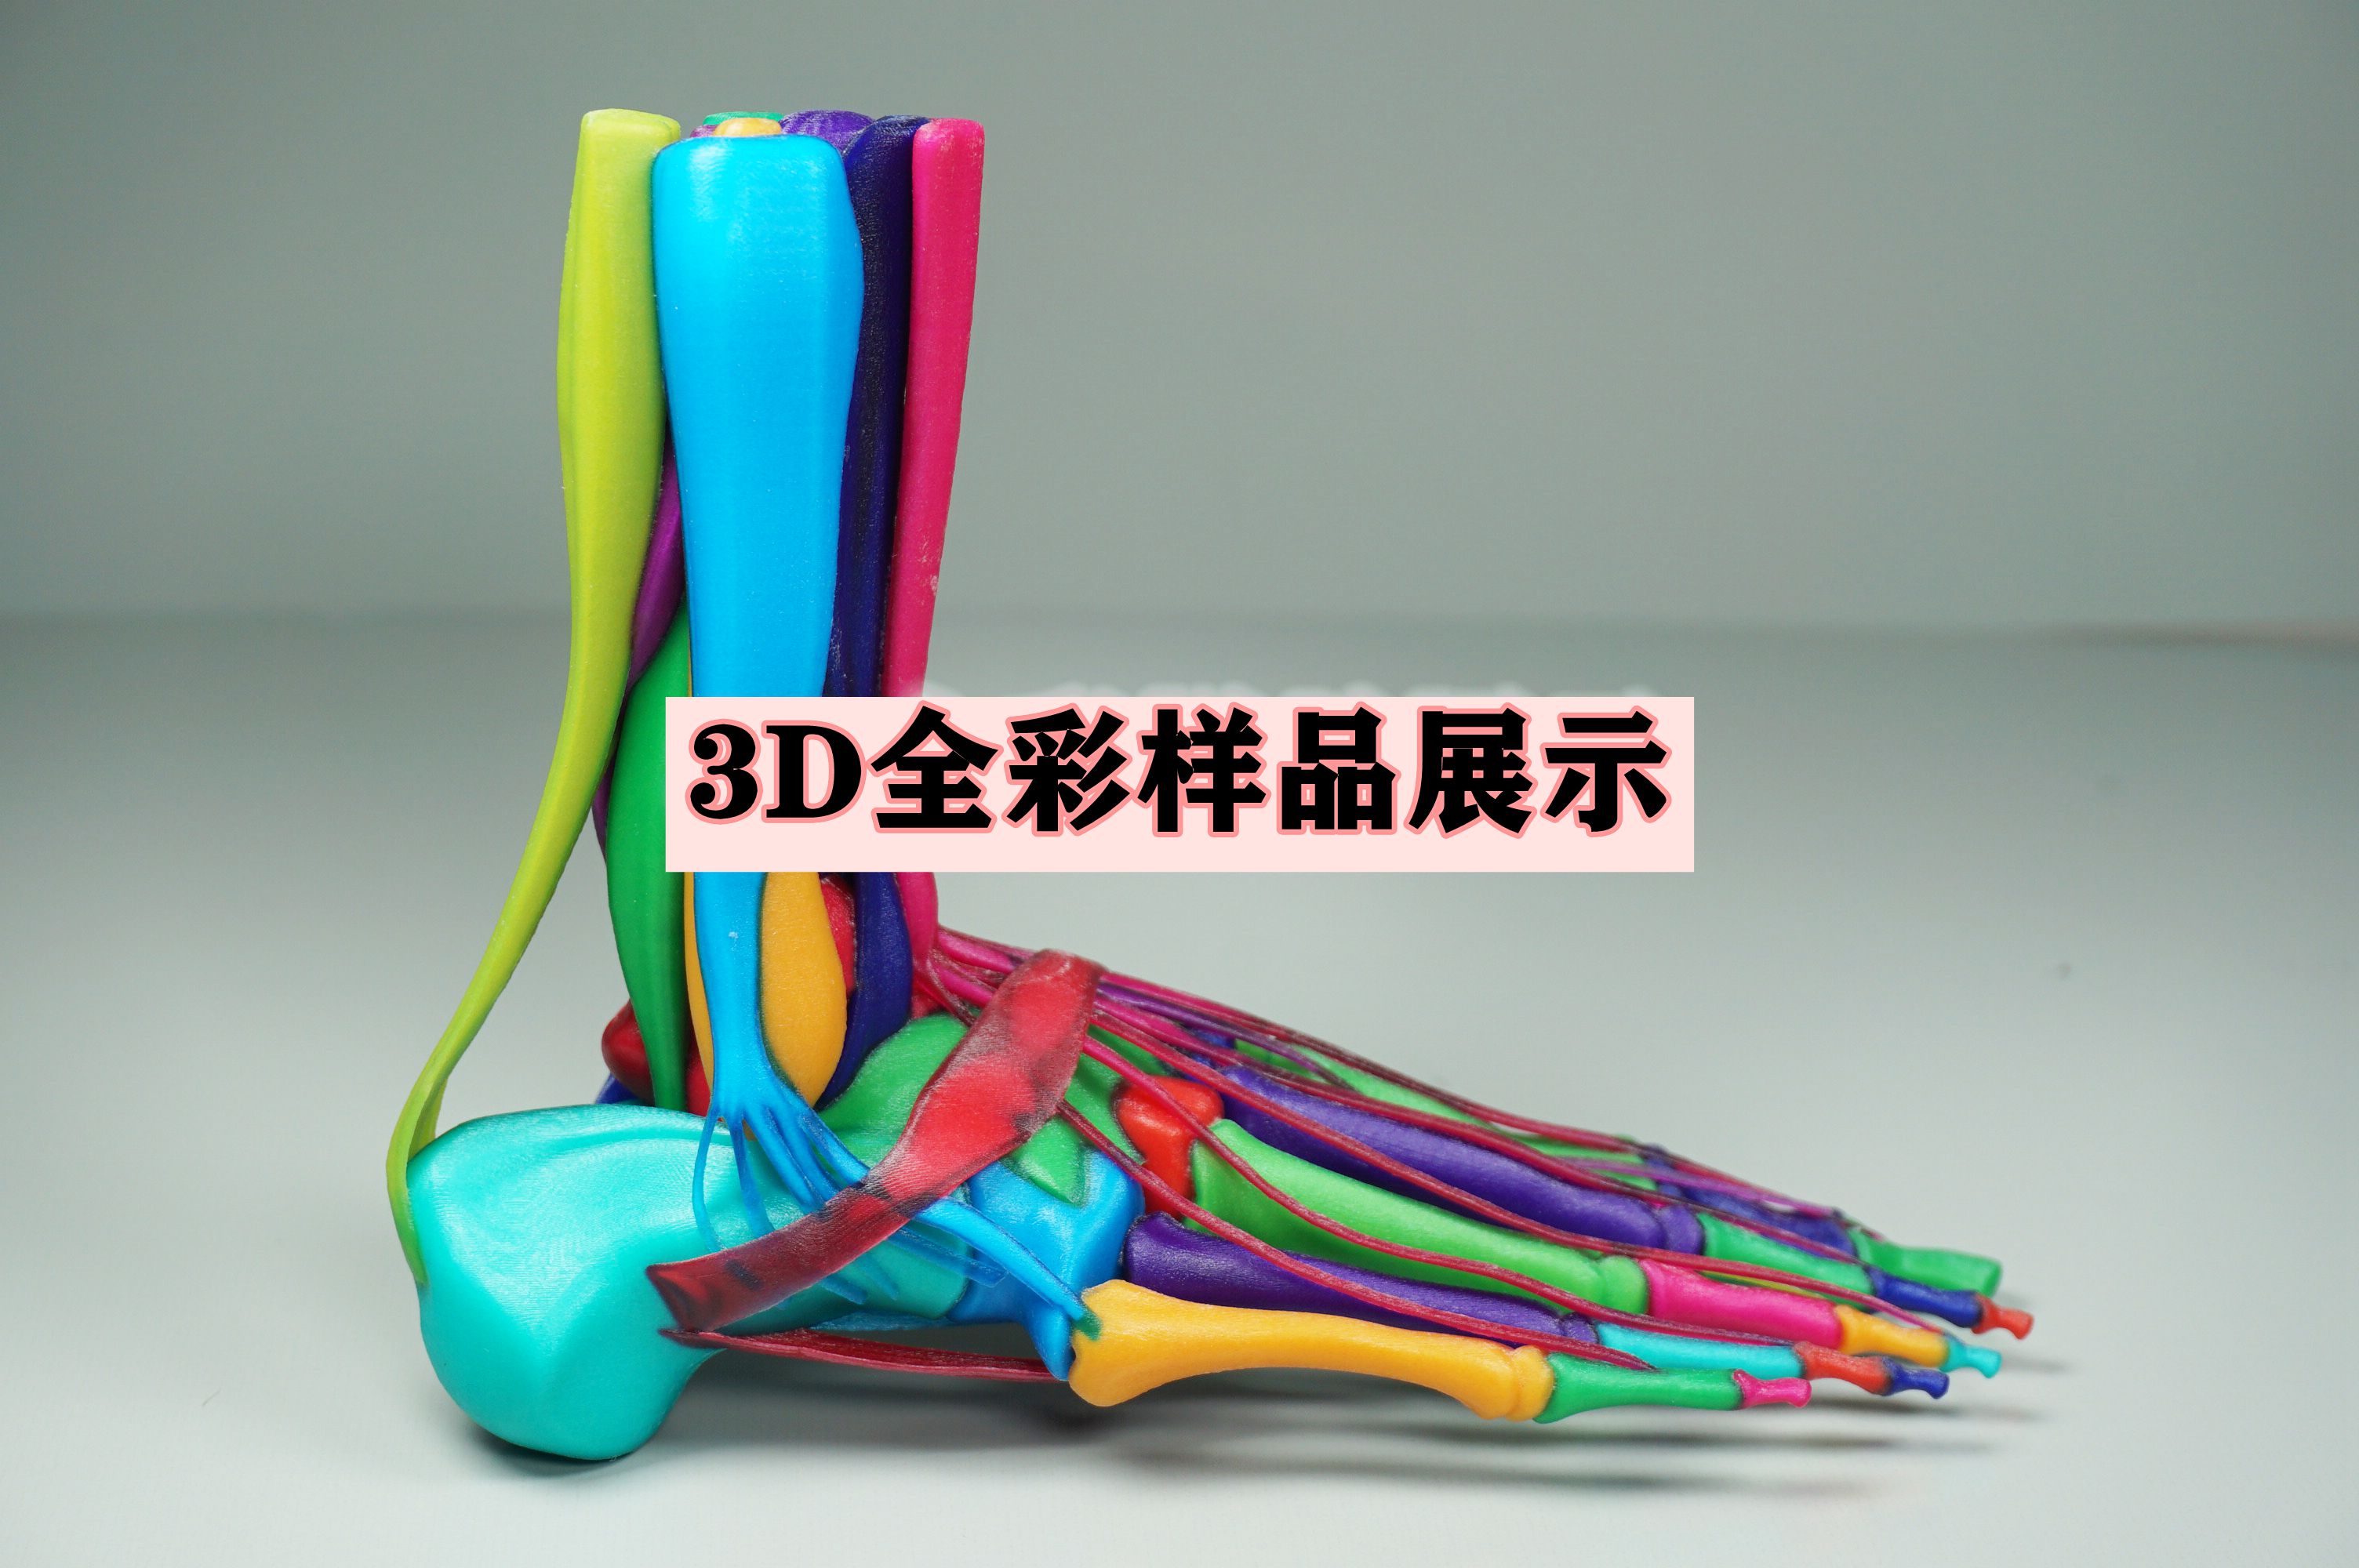 3D全彩样品展示